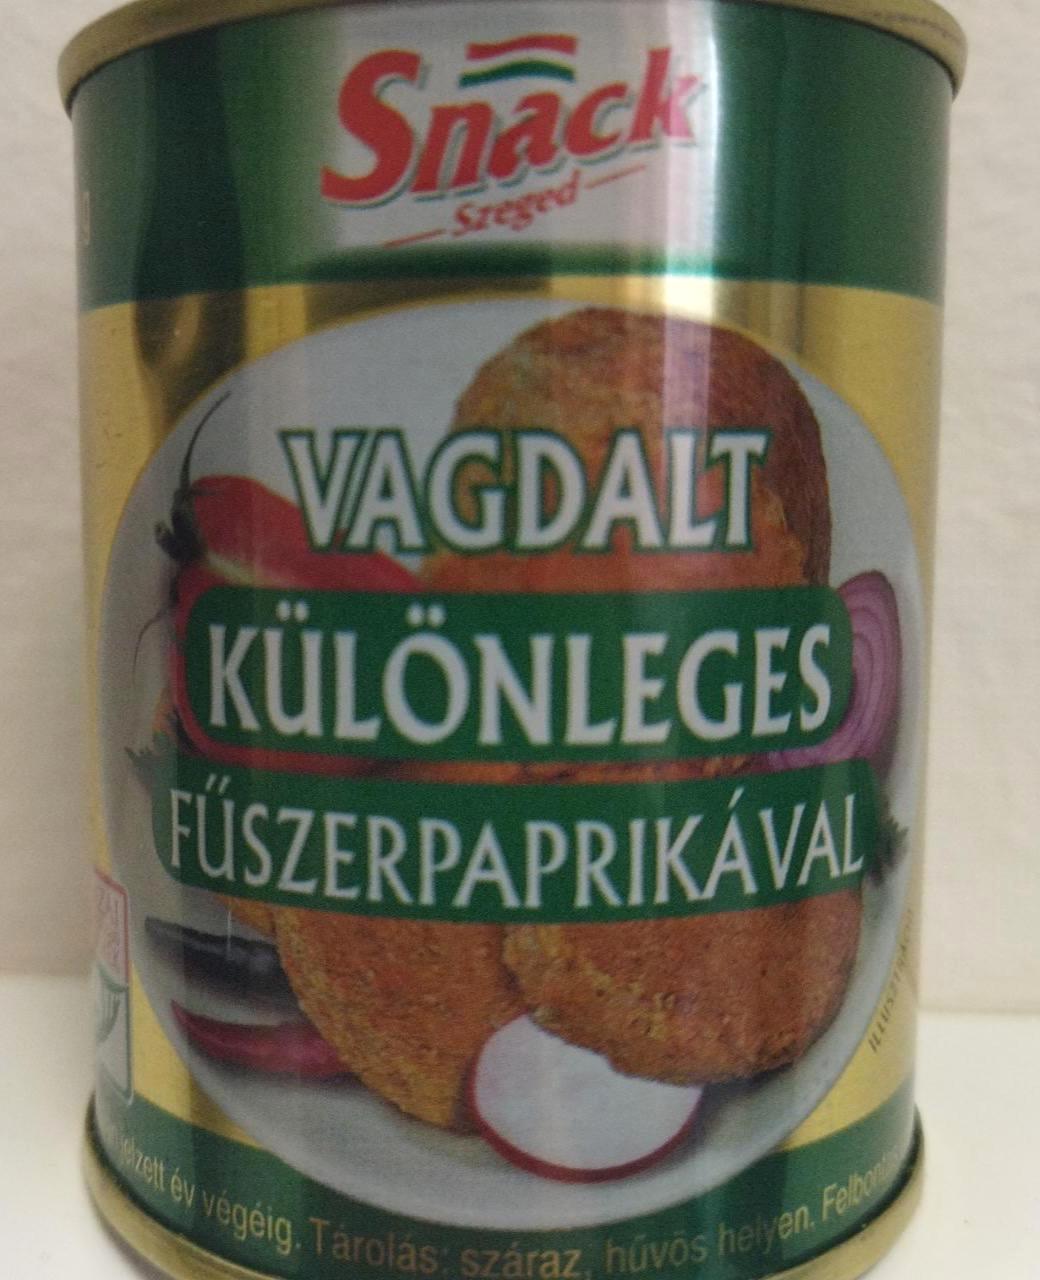 Képek - Vagdalt különleges fűszerpaprikával Snack Szeged